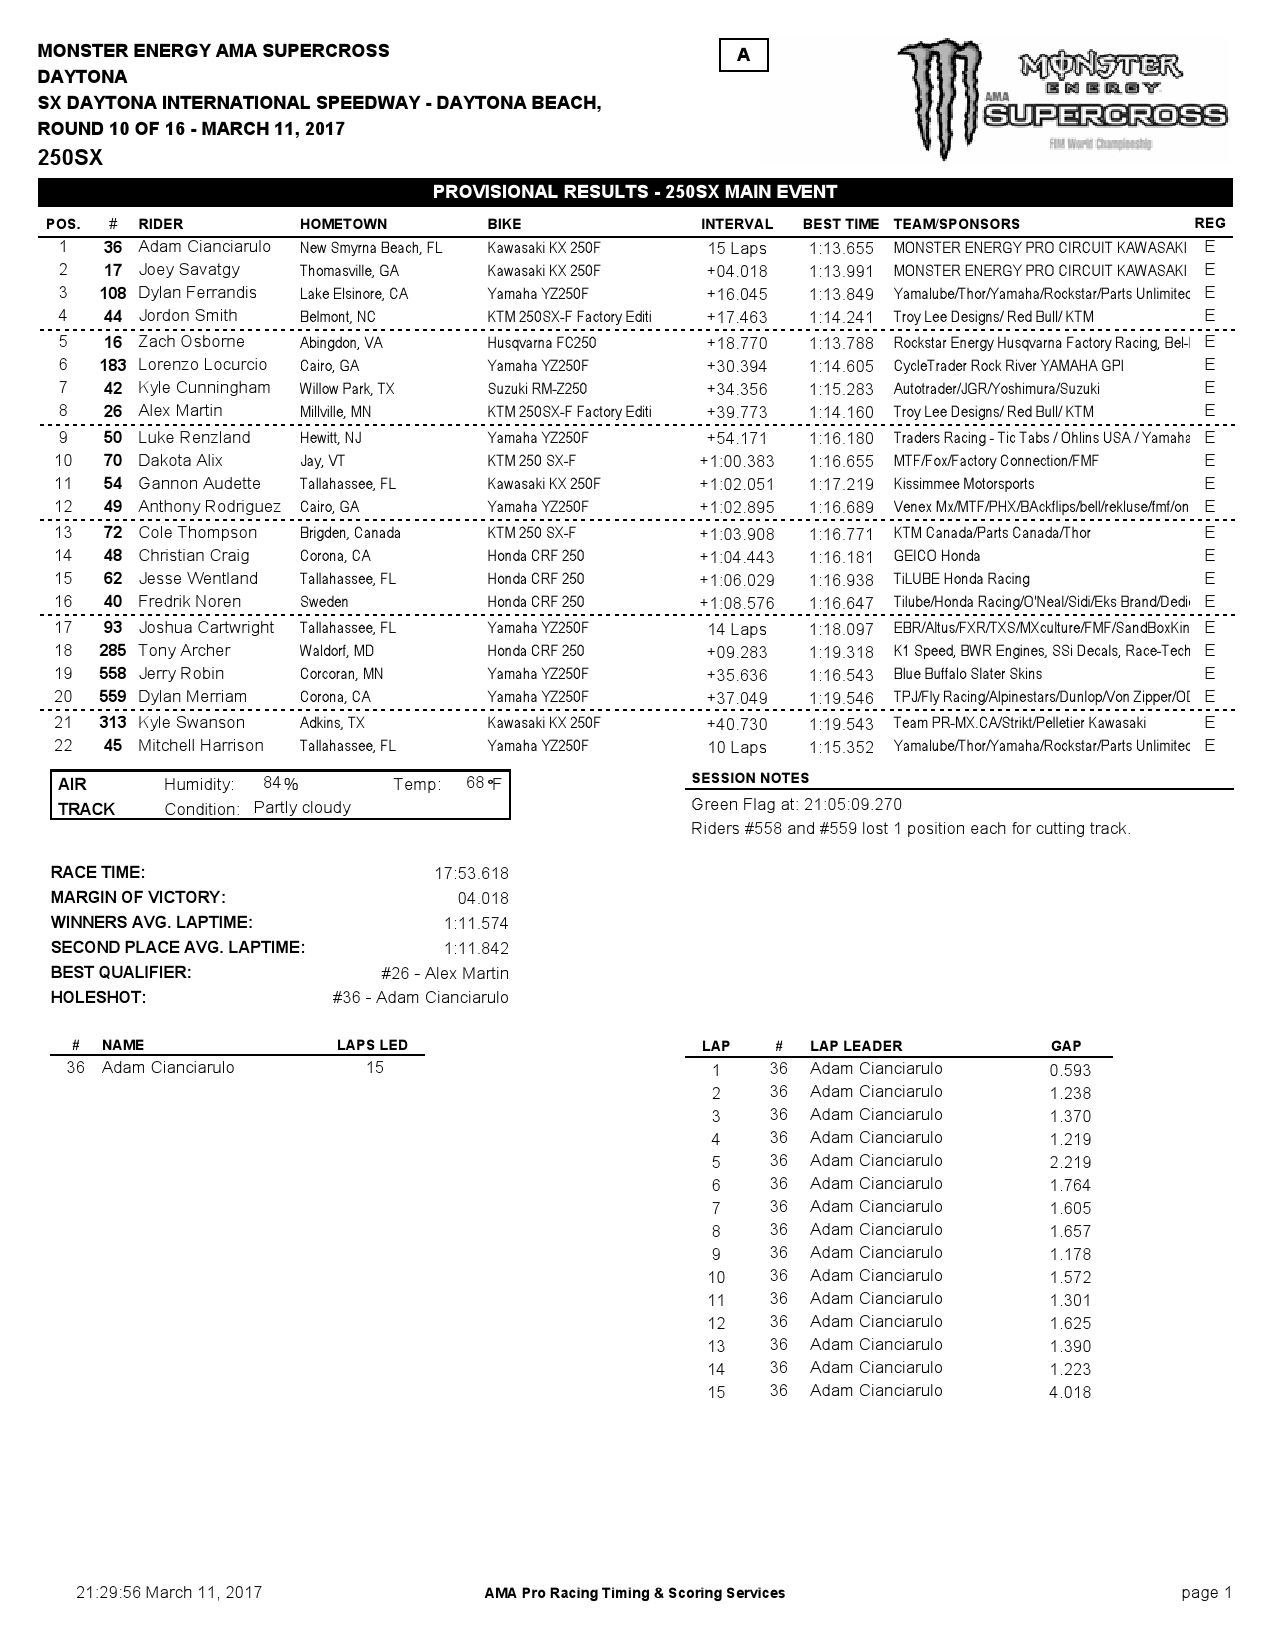 Результаты 4-го этапа Чемпионата Америки по суперкроссу 250SX восточного дивизиона